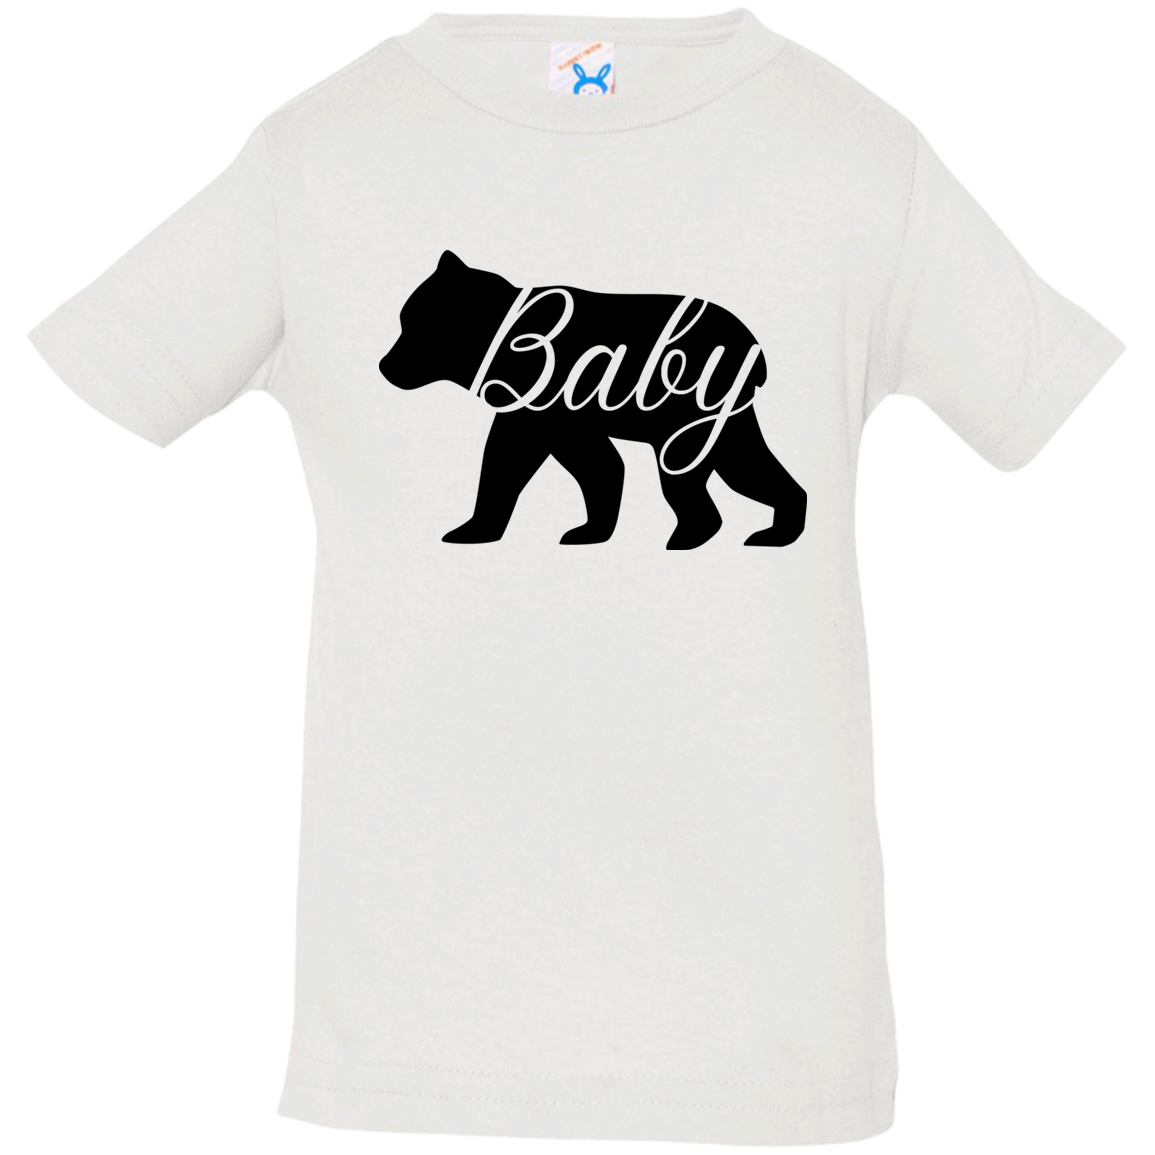 Papa, Mama, and Baby Bear T-Shirts